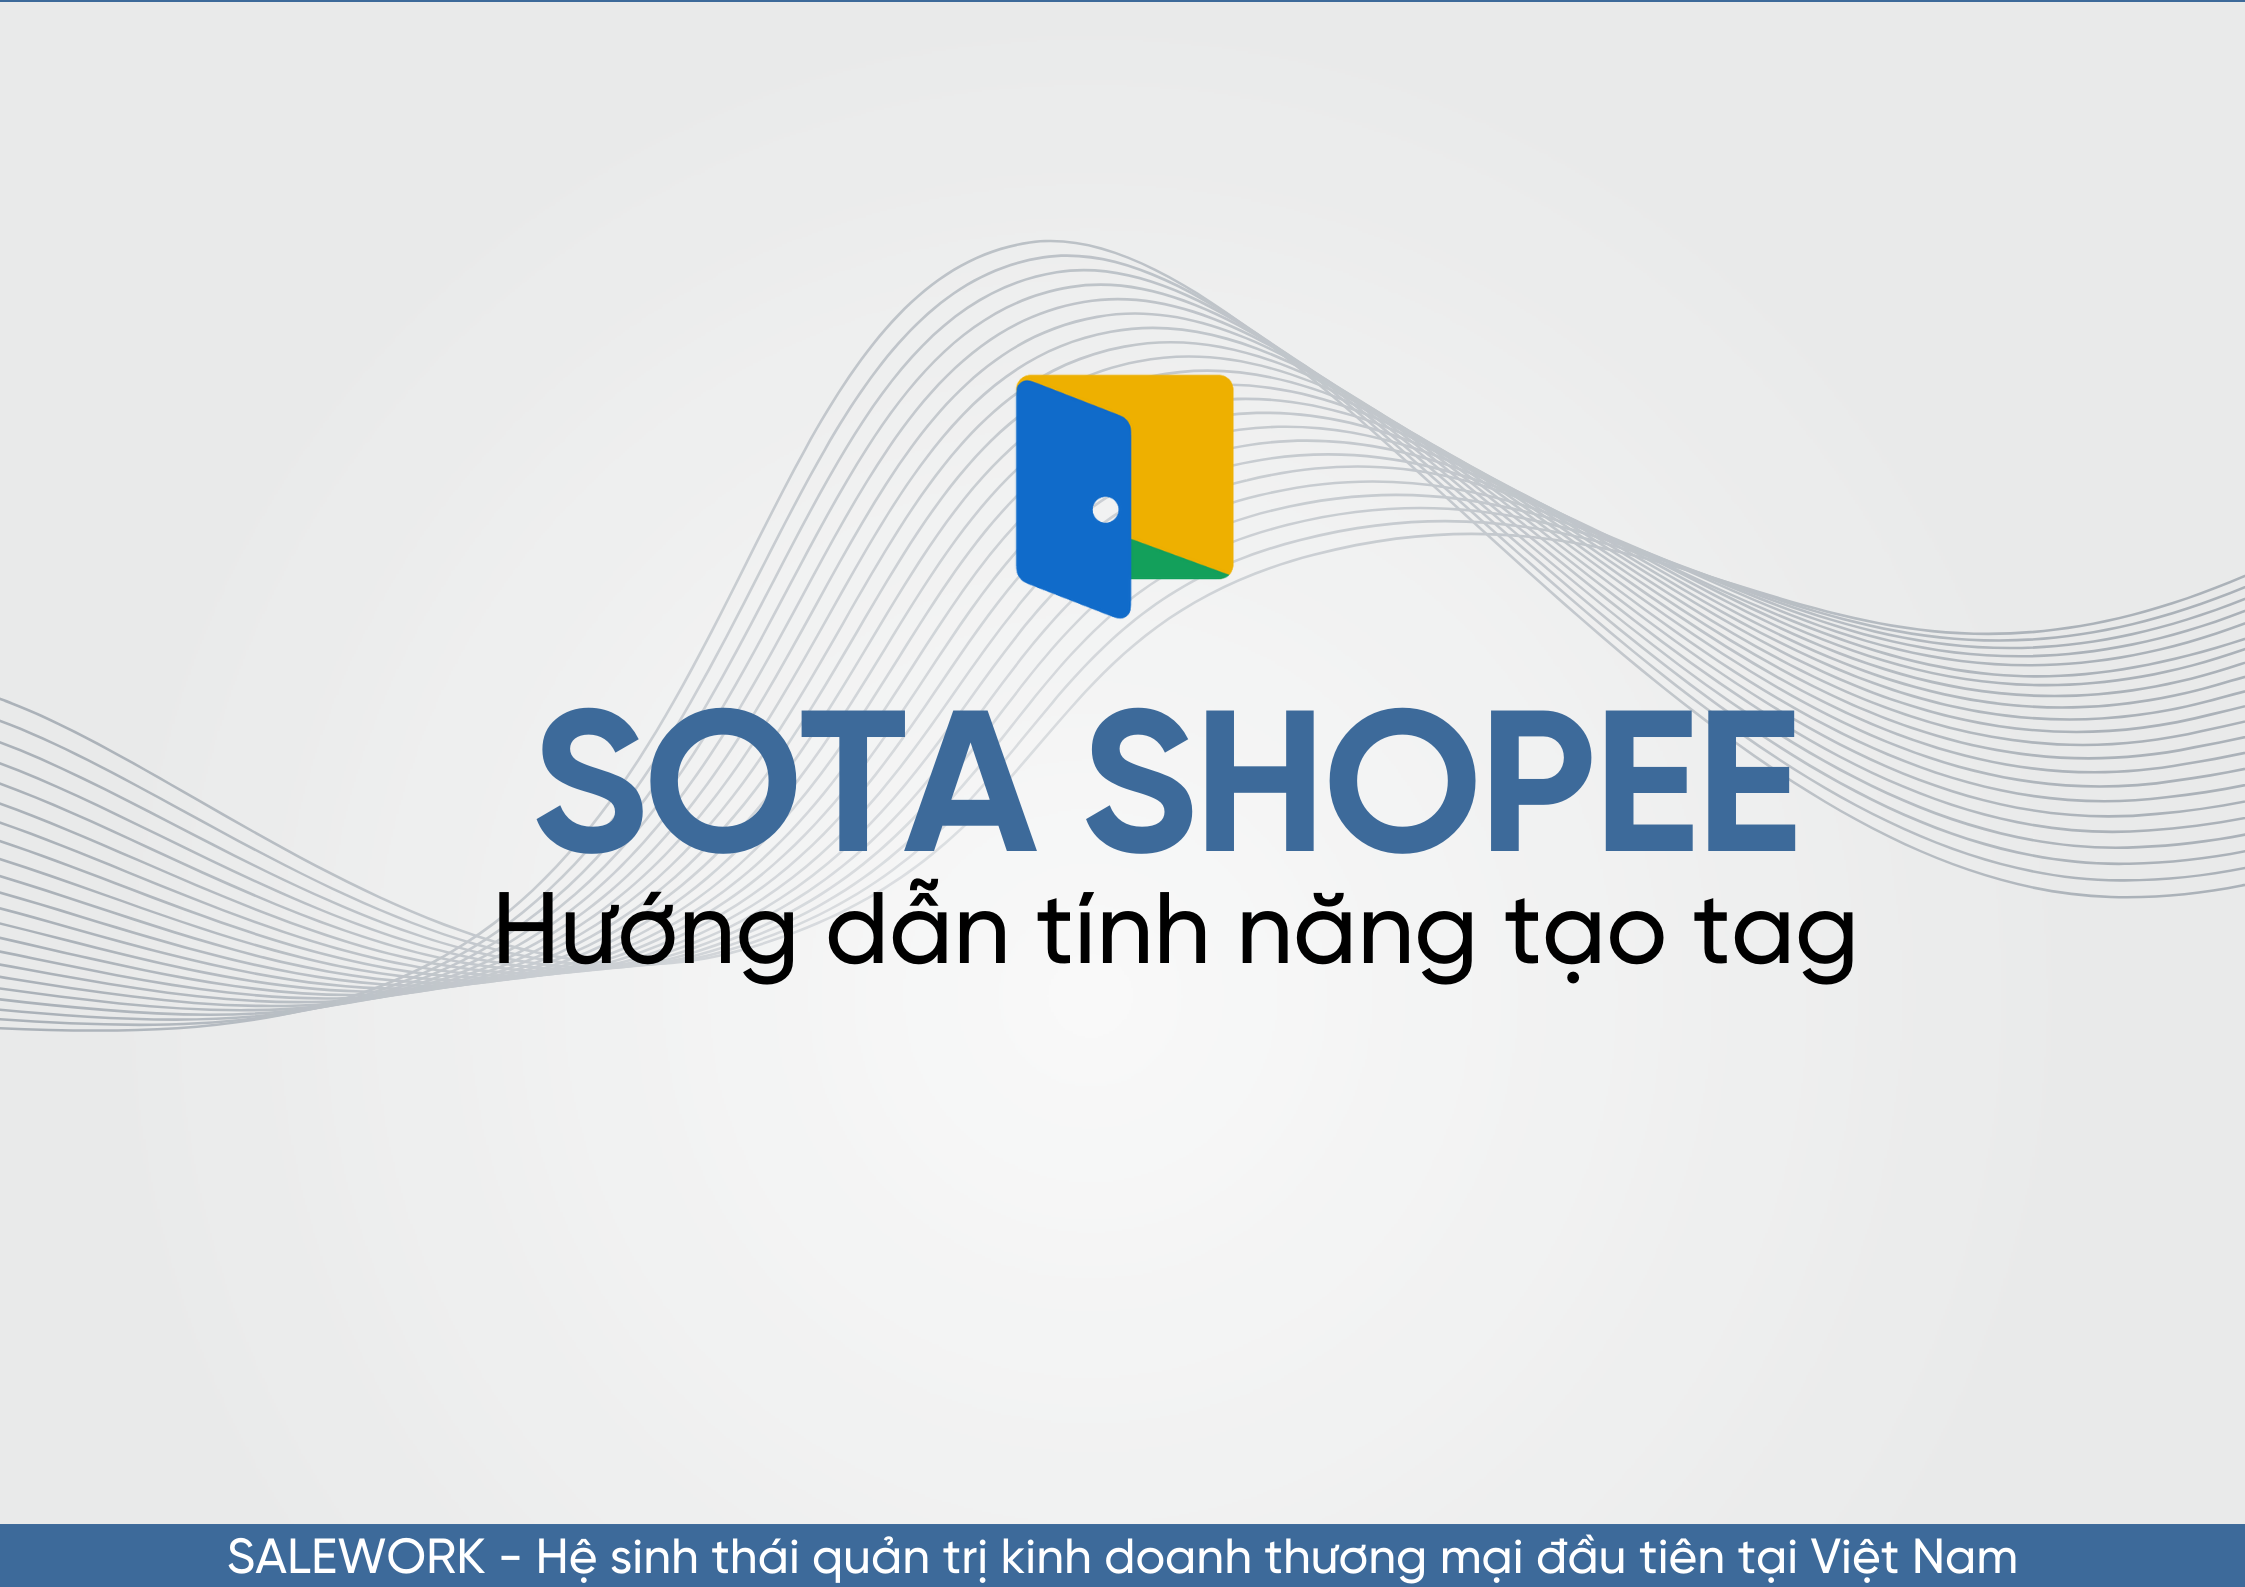 Hướng dẫn tính năng tạo tag trên SOTA Shopee - 20